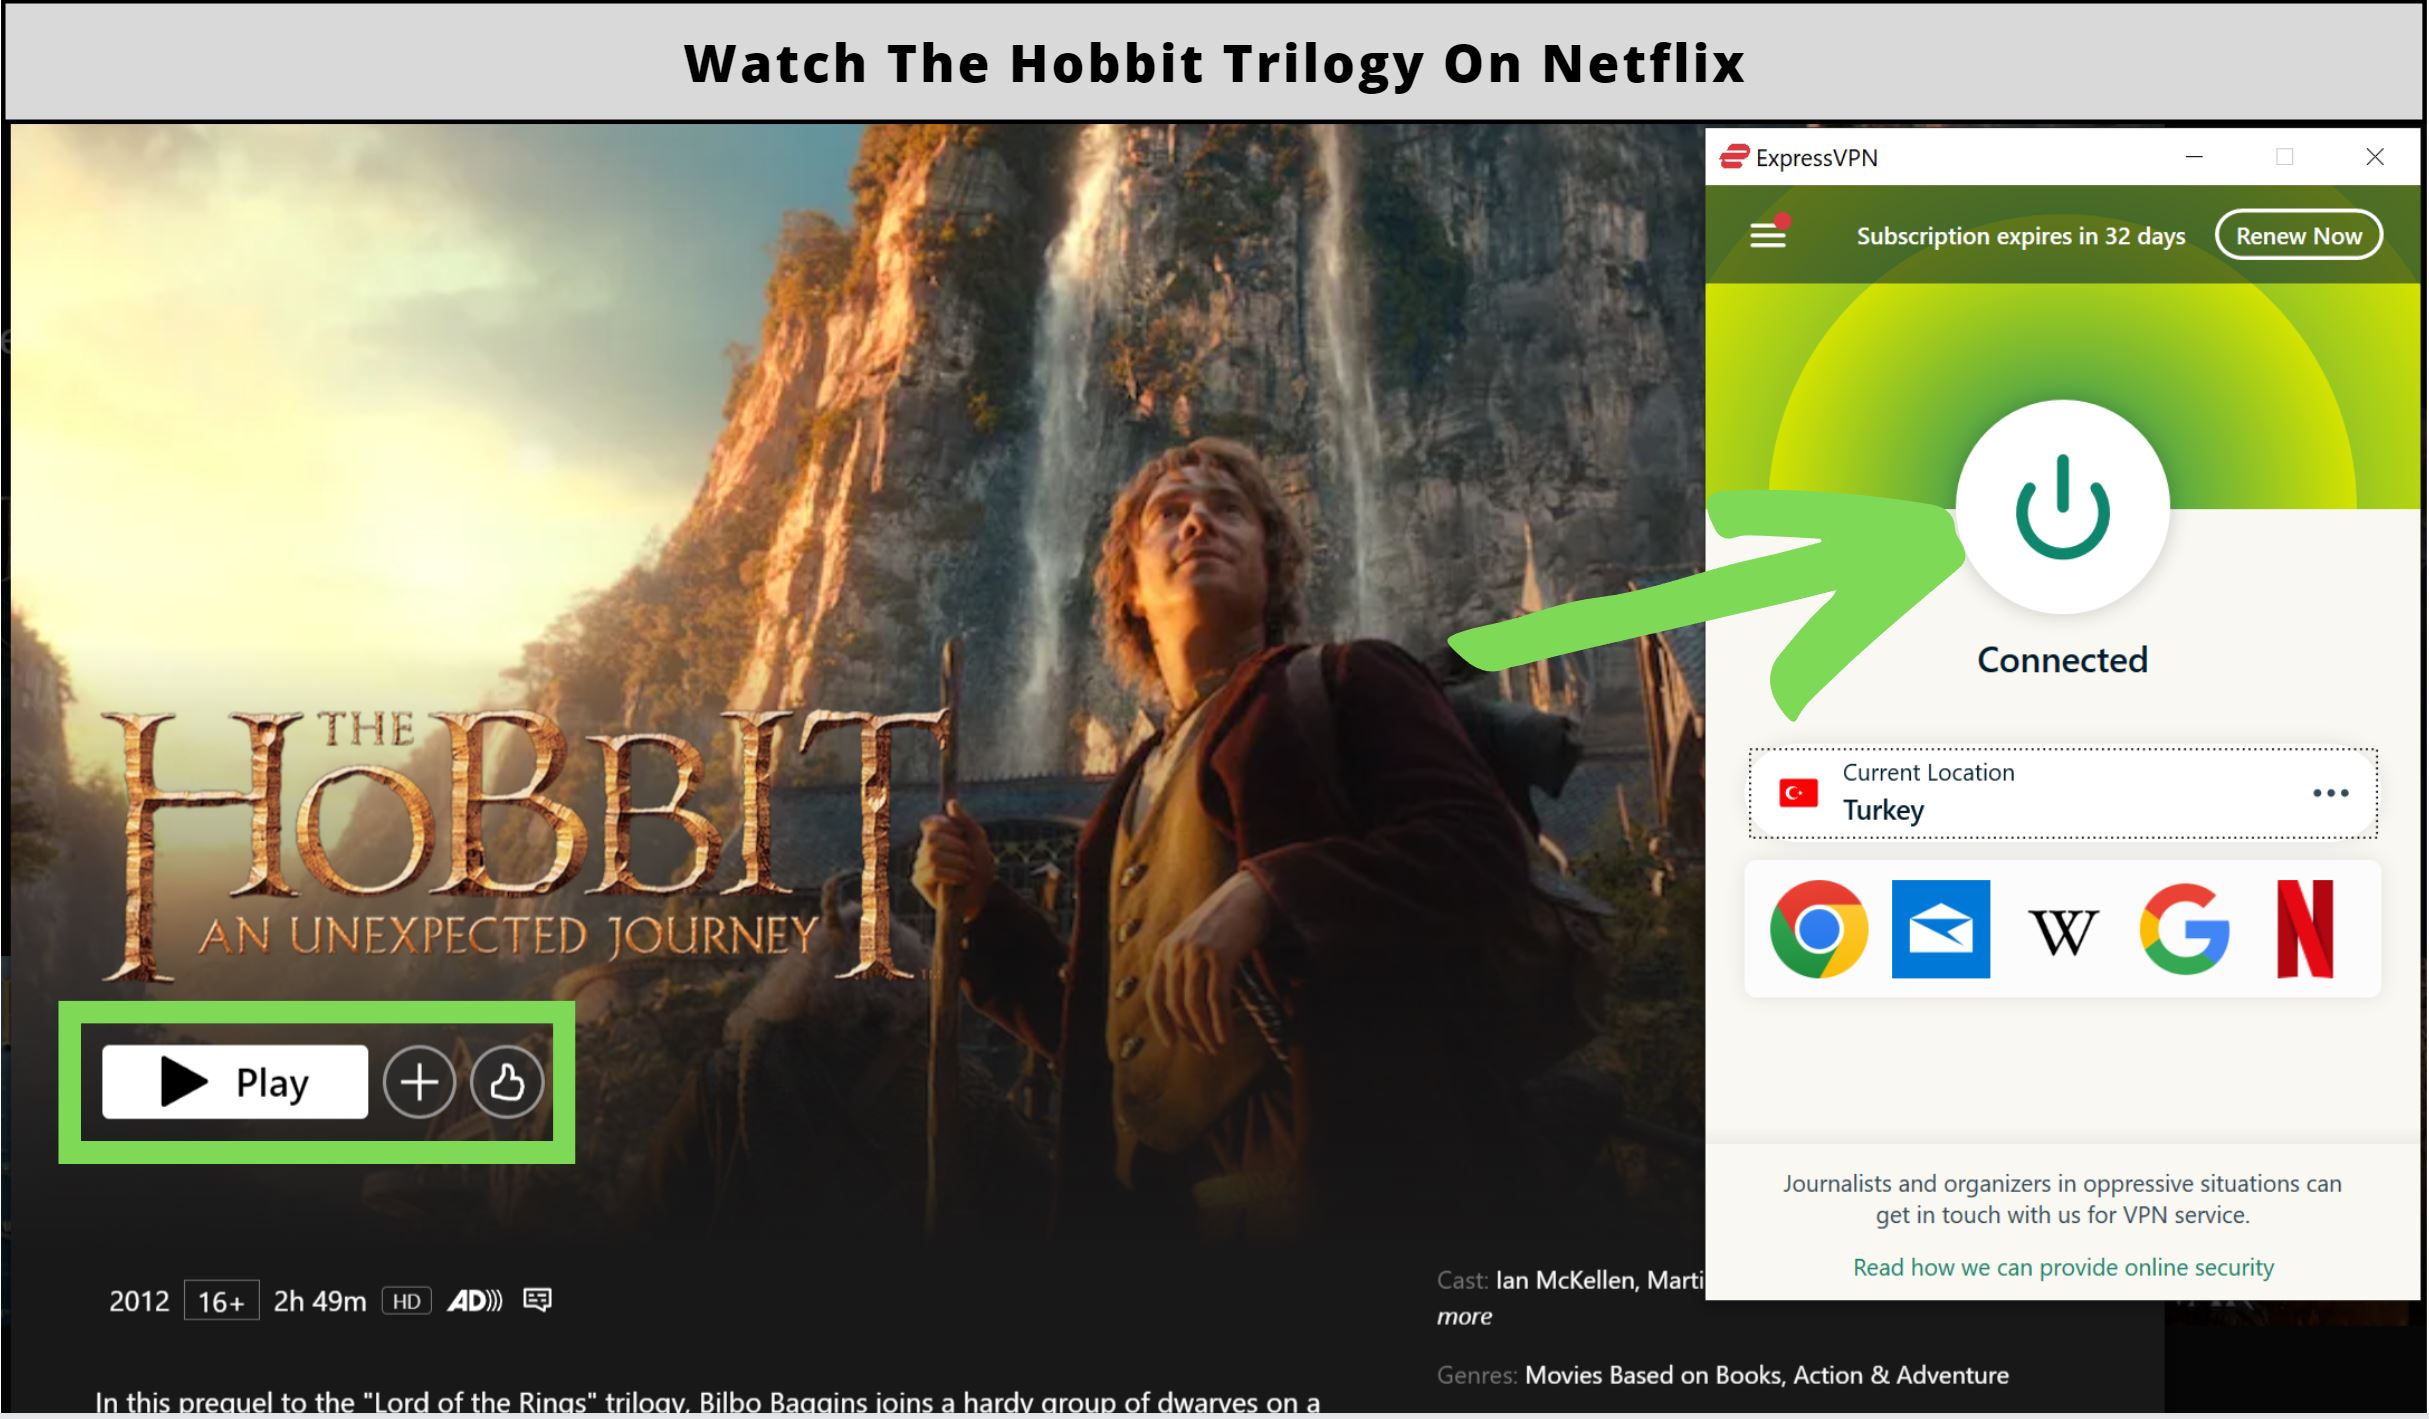 Is The Hobbit on Netflix in 2023?